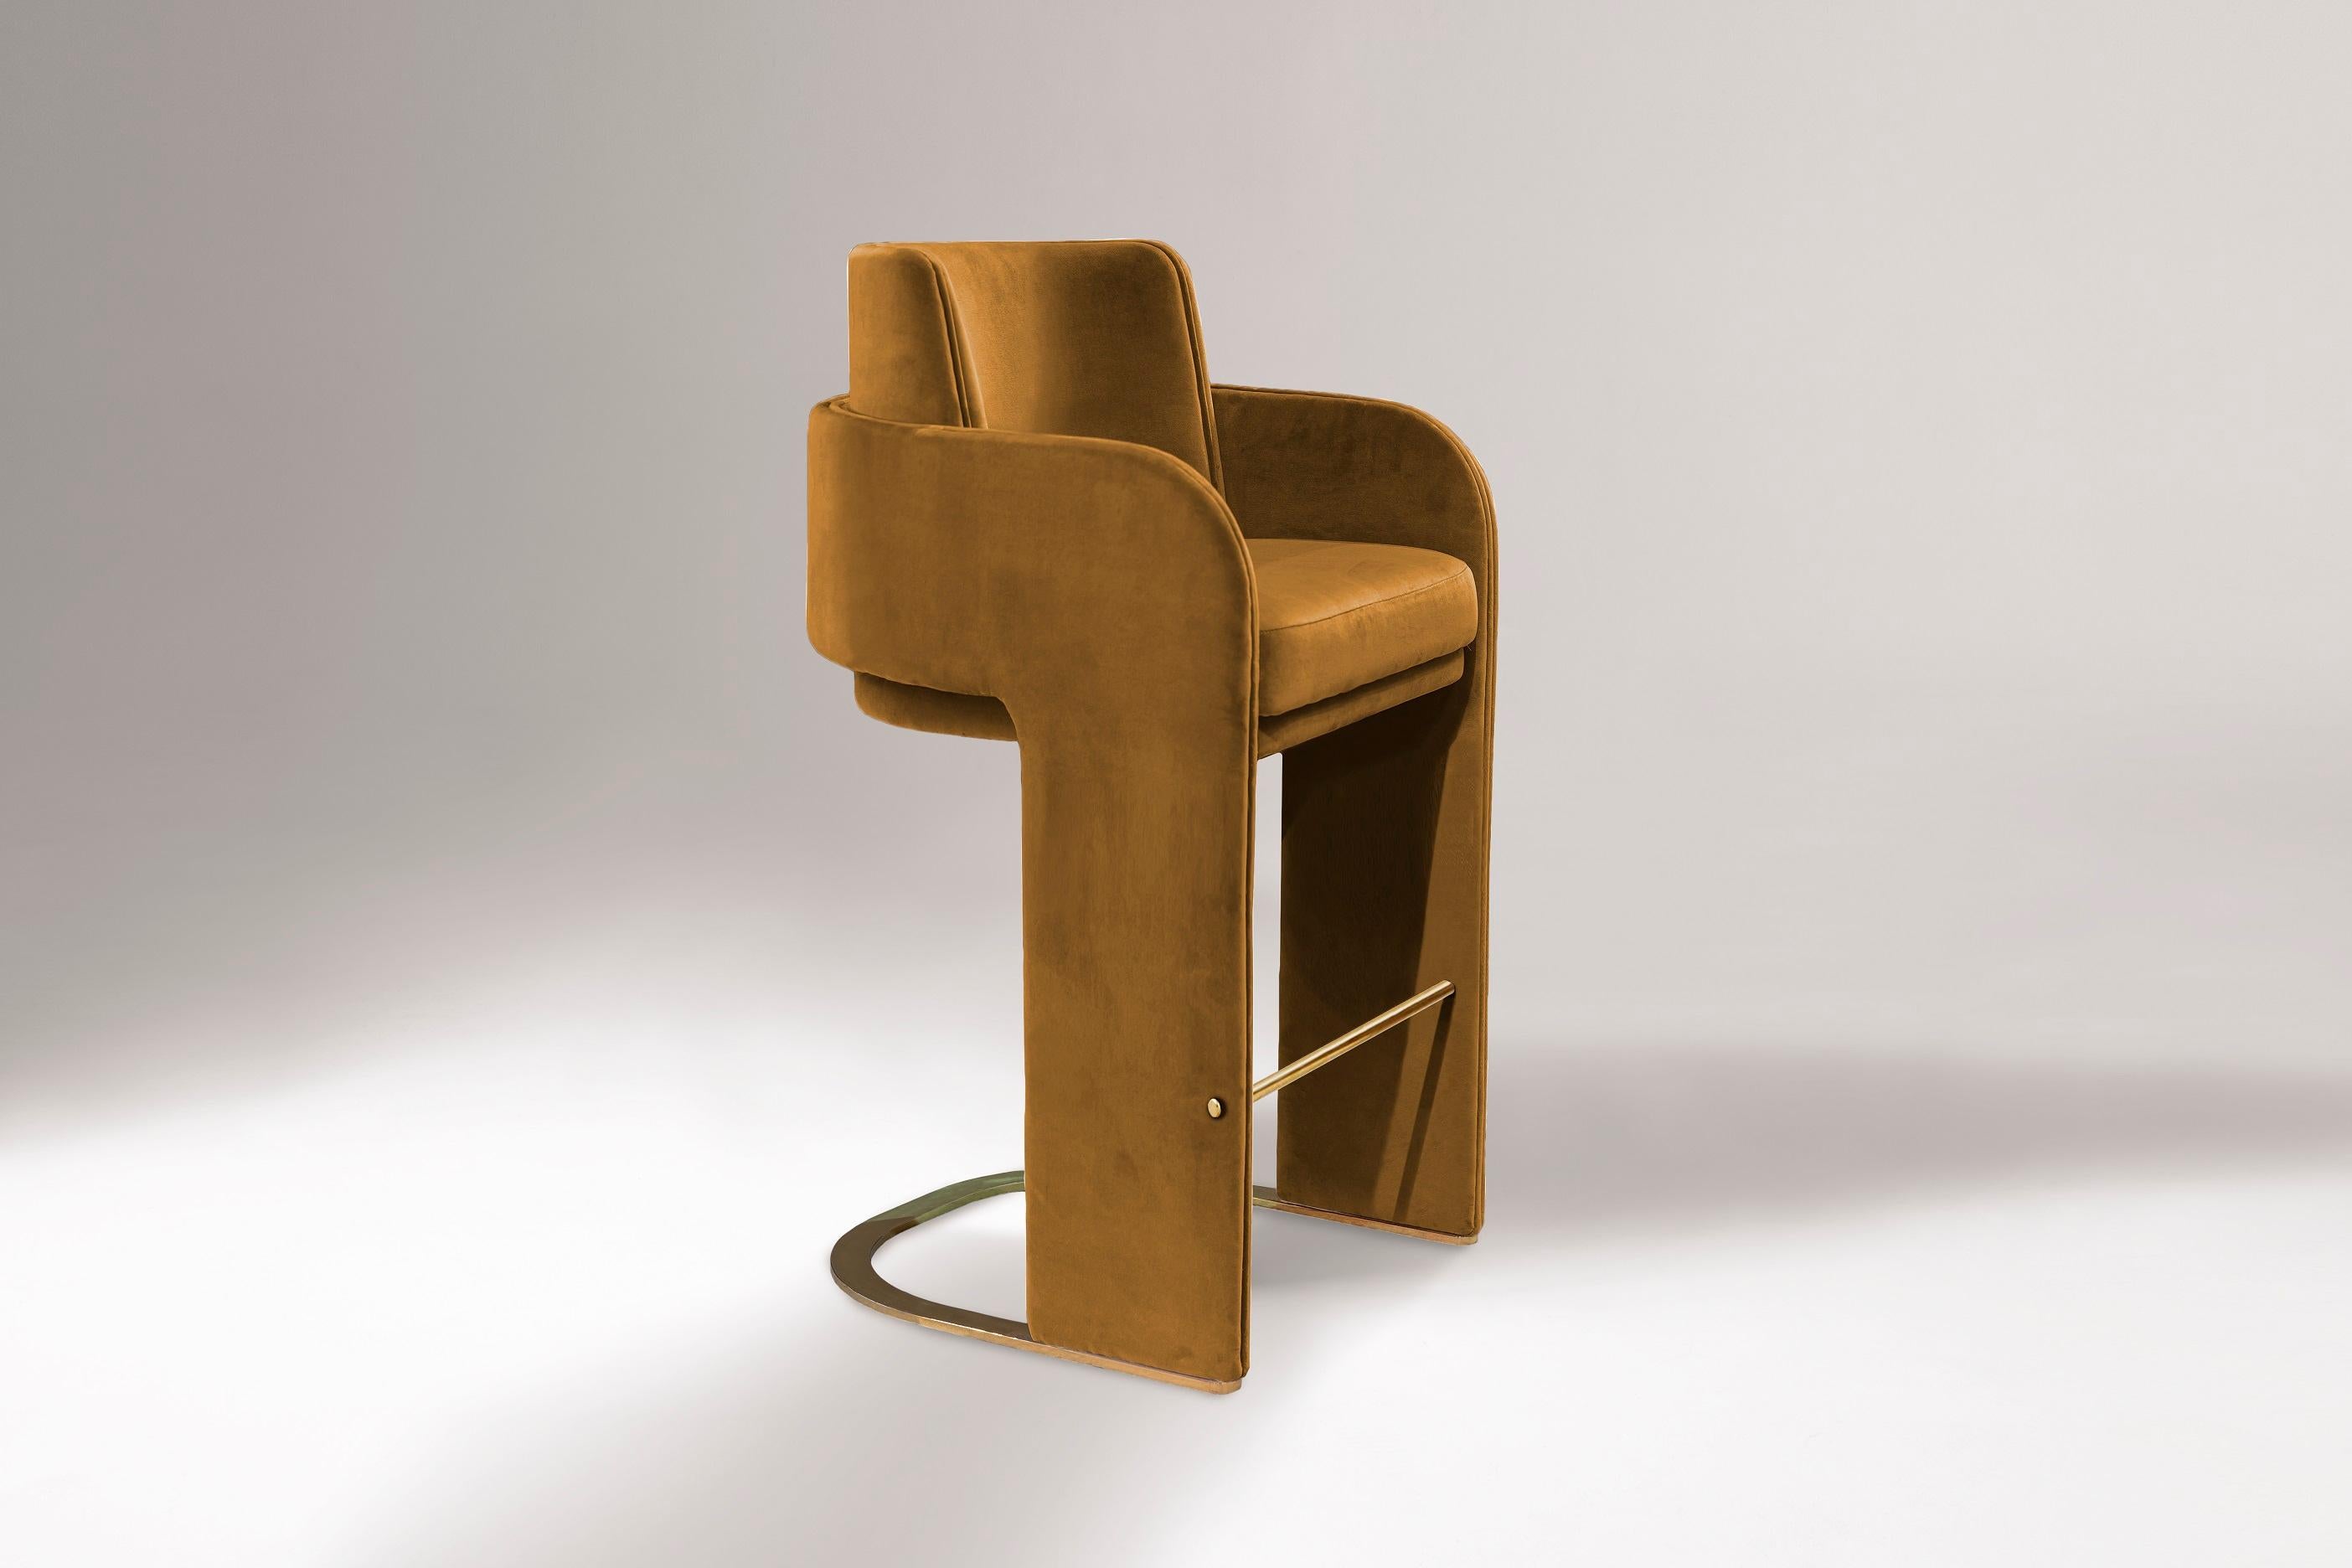 La chaise de comptoir Odisseia incarne l'esprit esthétique de l'ère spatiale, un nouveau type de luxe discret et de confort inspiré d'une ère futuriste créée par de nouvelles expériences visuelles et des concepts du futur. Cette pièce sans effort